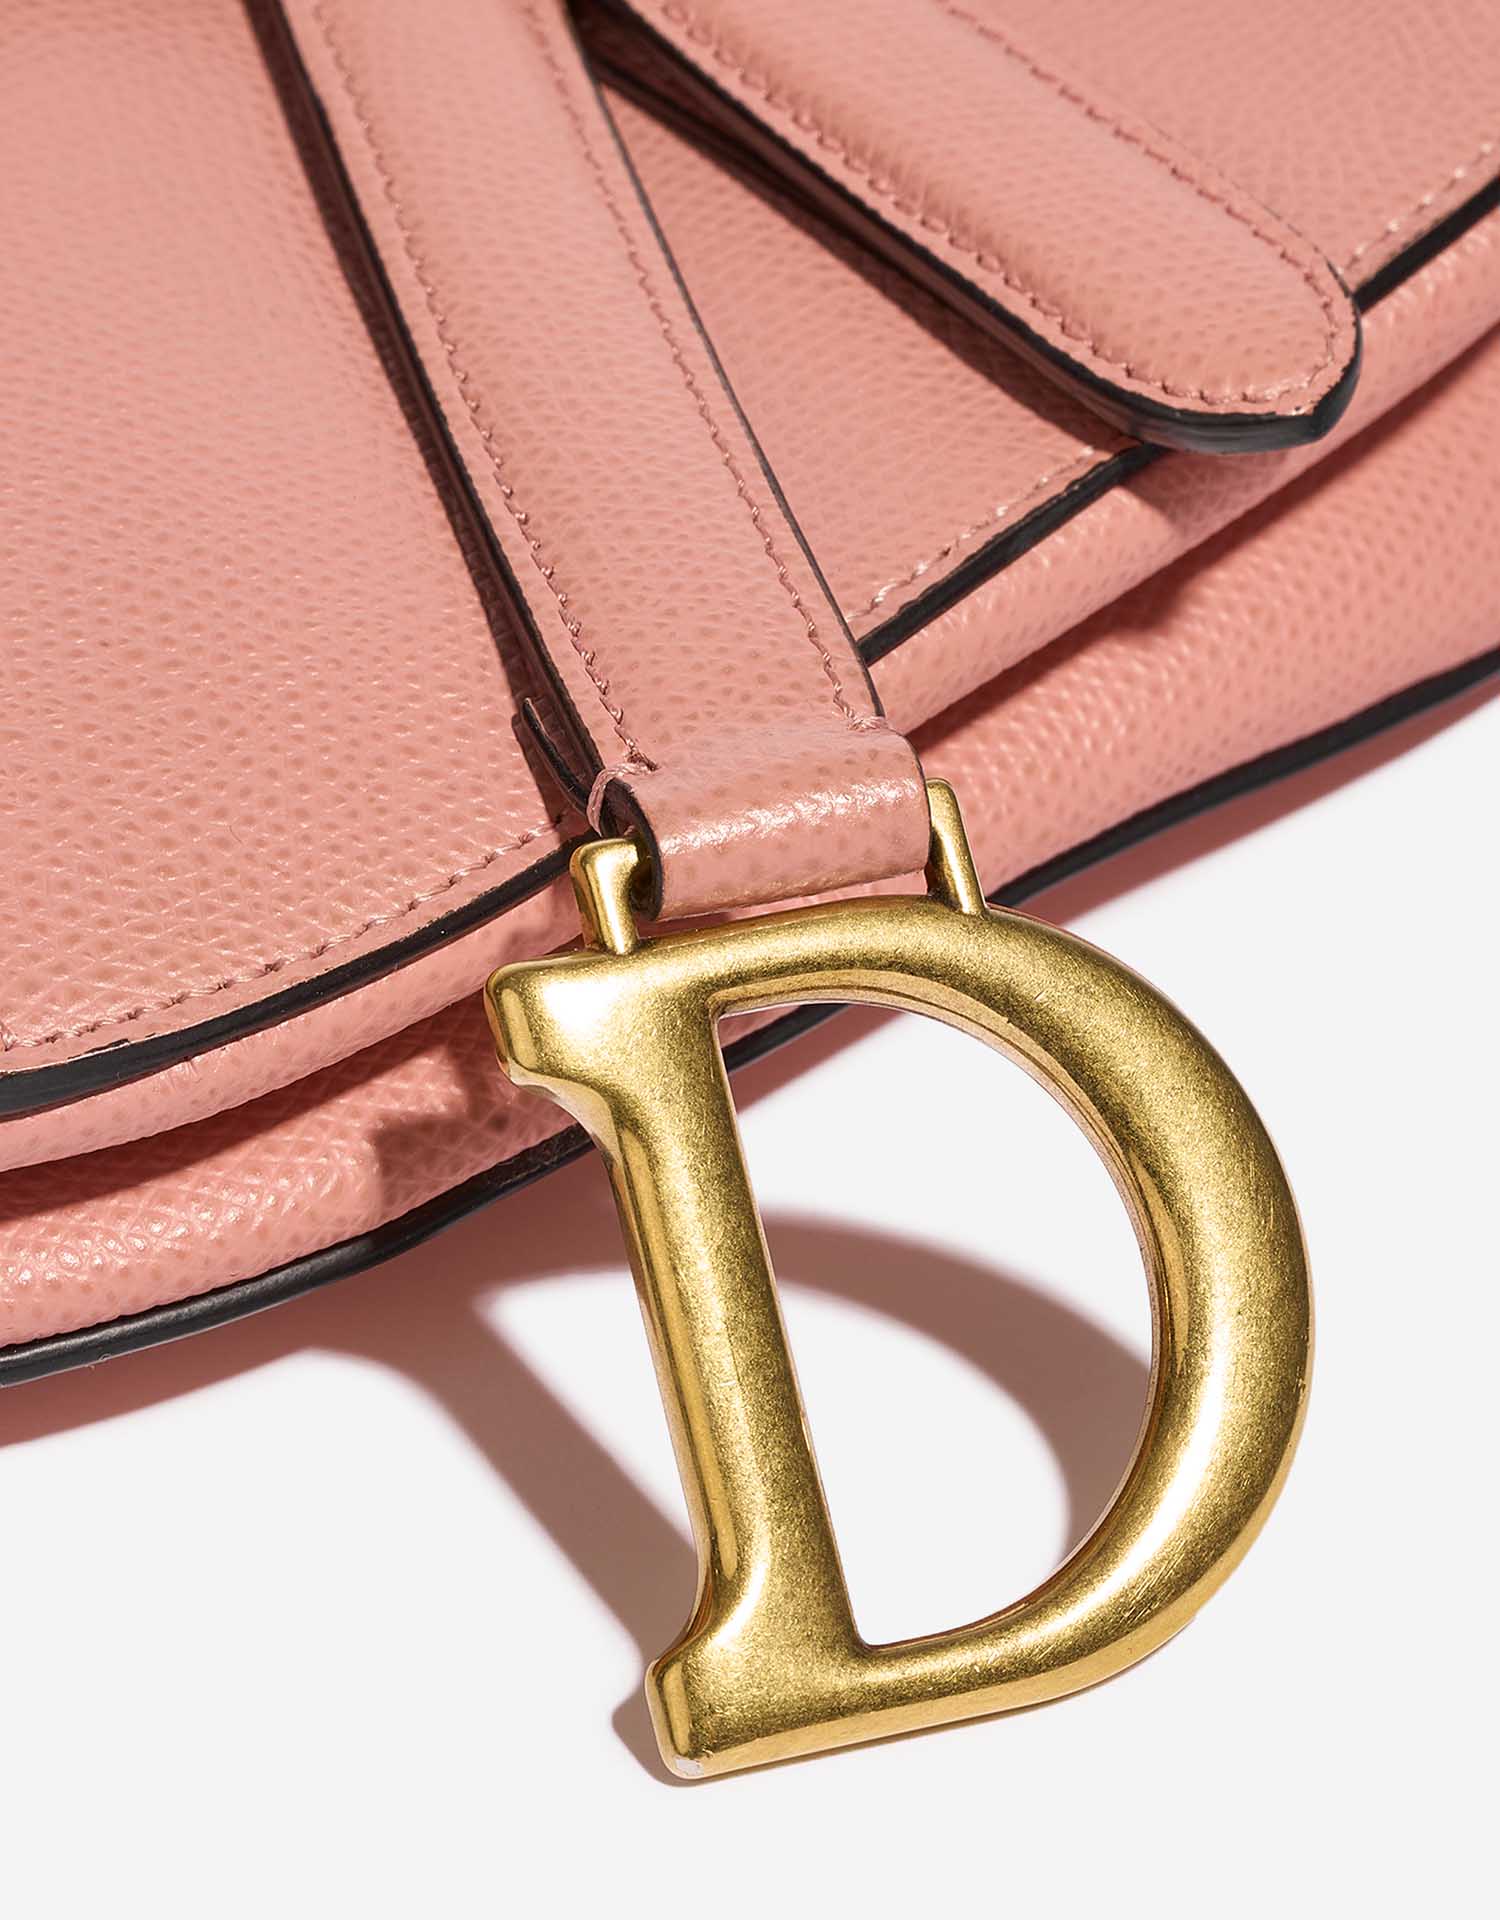 Dior Saddle Mini Pink Verschluss-System | Verkaufen Sie Ihre Designer-Tasche auf Saclab.com